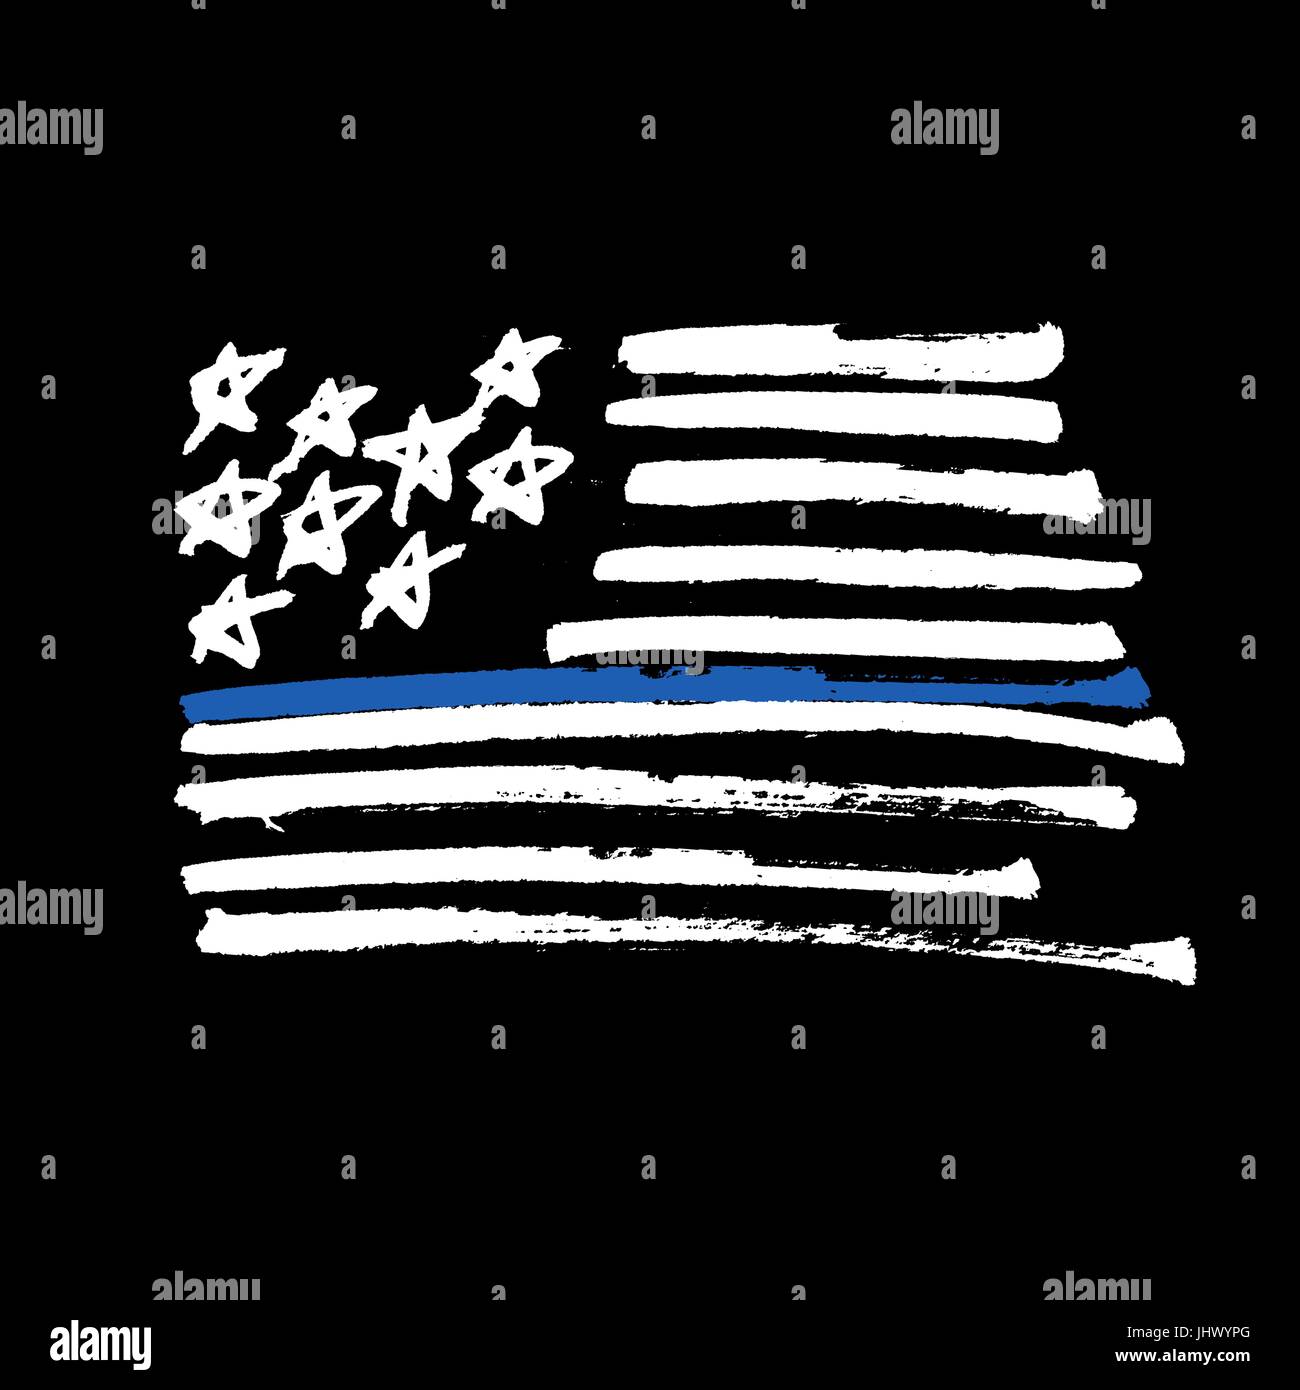 Handgezeichnete amerikanische Flagge "Thin blue Line" Monochrome Darstellung. Mit dem Pinsel gemalt. Isoliert auf schwarz. Stock Vektor